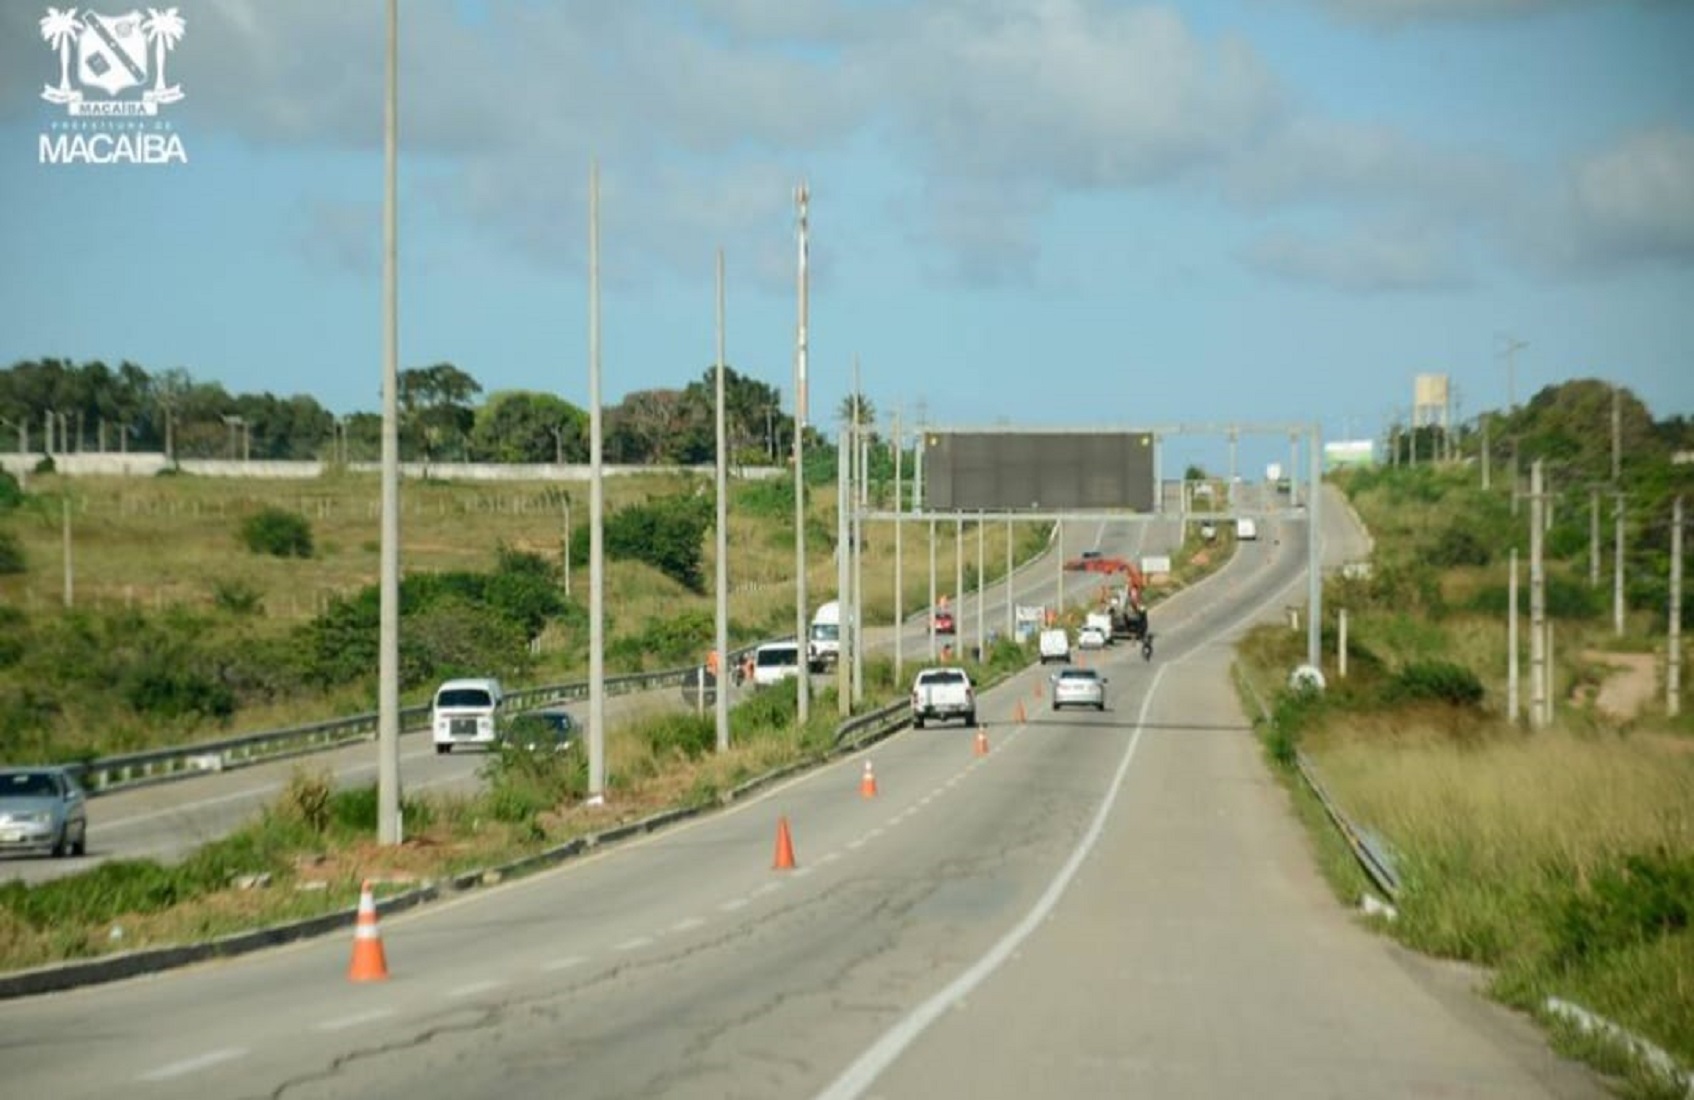 Grupo de ciclistas é assaltado por homens armados na BR-304 entre Macaíba e Parnamirim